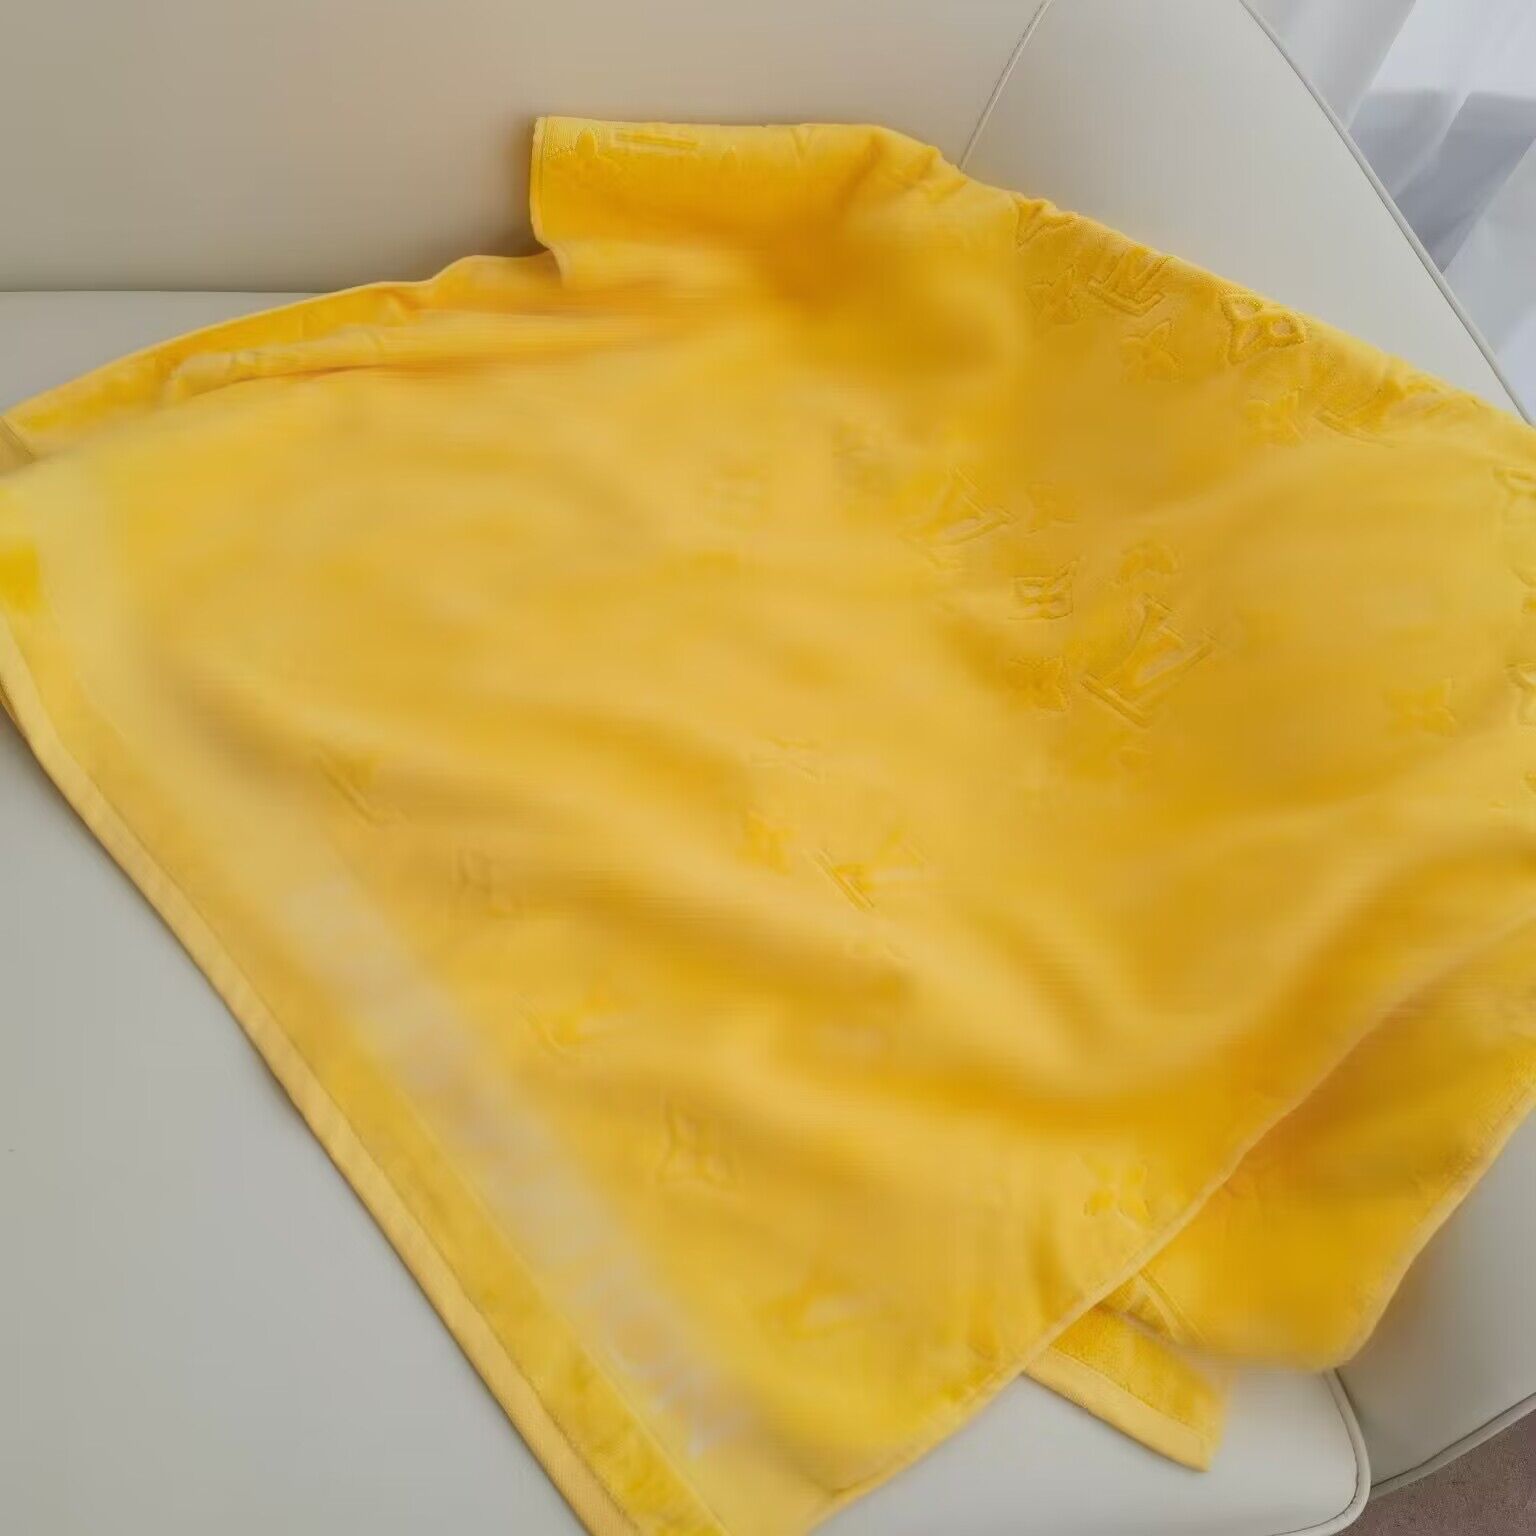 Luxe badhanddoeken mode driedimensionaal klassiek patroon katoenen stoffen van topkwaliteit groot formaat badhanddoek 150 * 90 cm voor binnen buiten auto strandvakantie